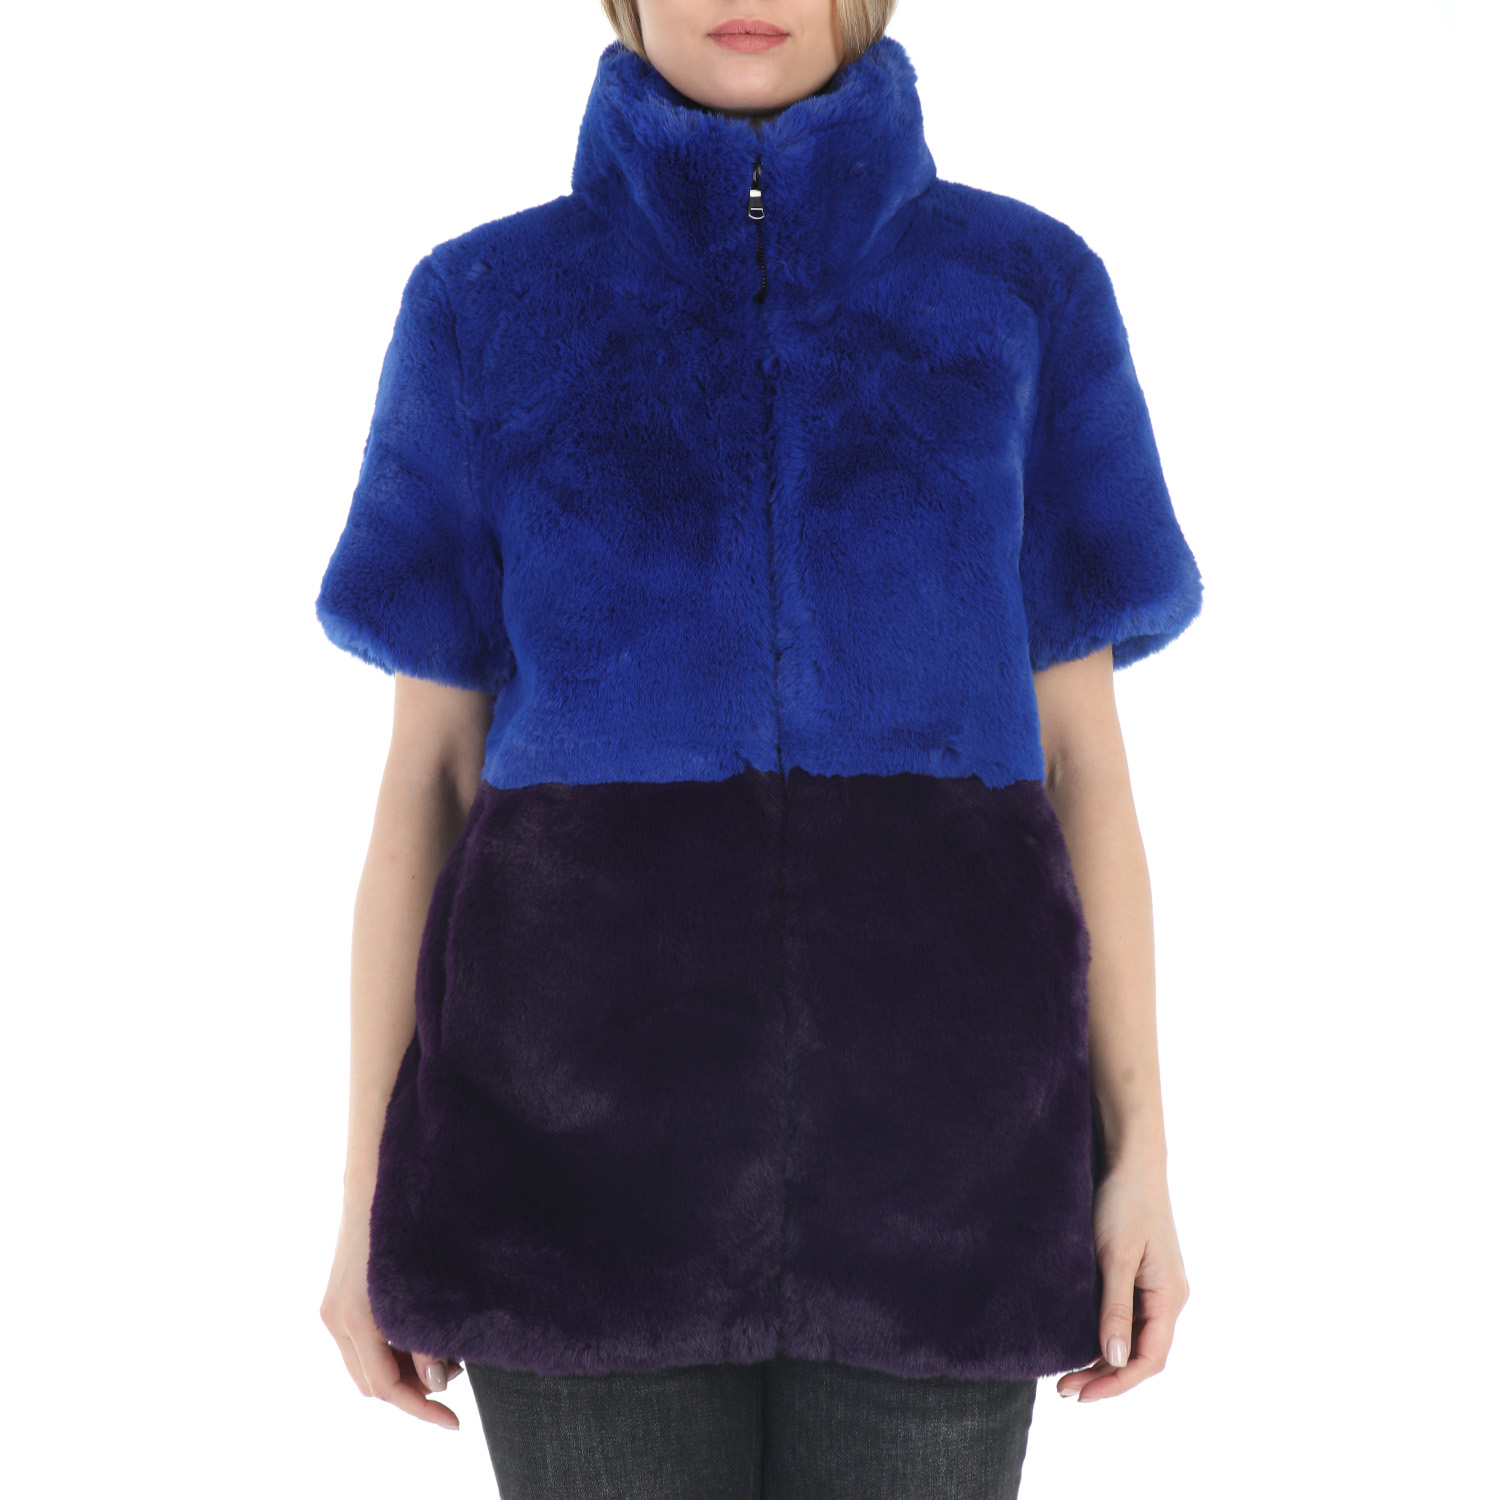 Γυναικεία/Ρούχα/Πανωφόρια/Παλτό TAVUS - Γυναικείο γούνινο παλτό TAVUS μπλε